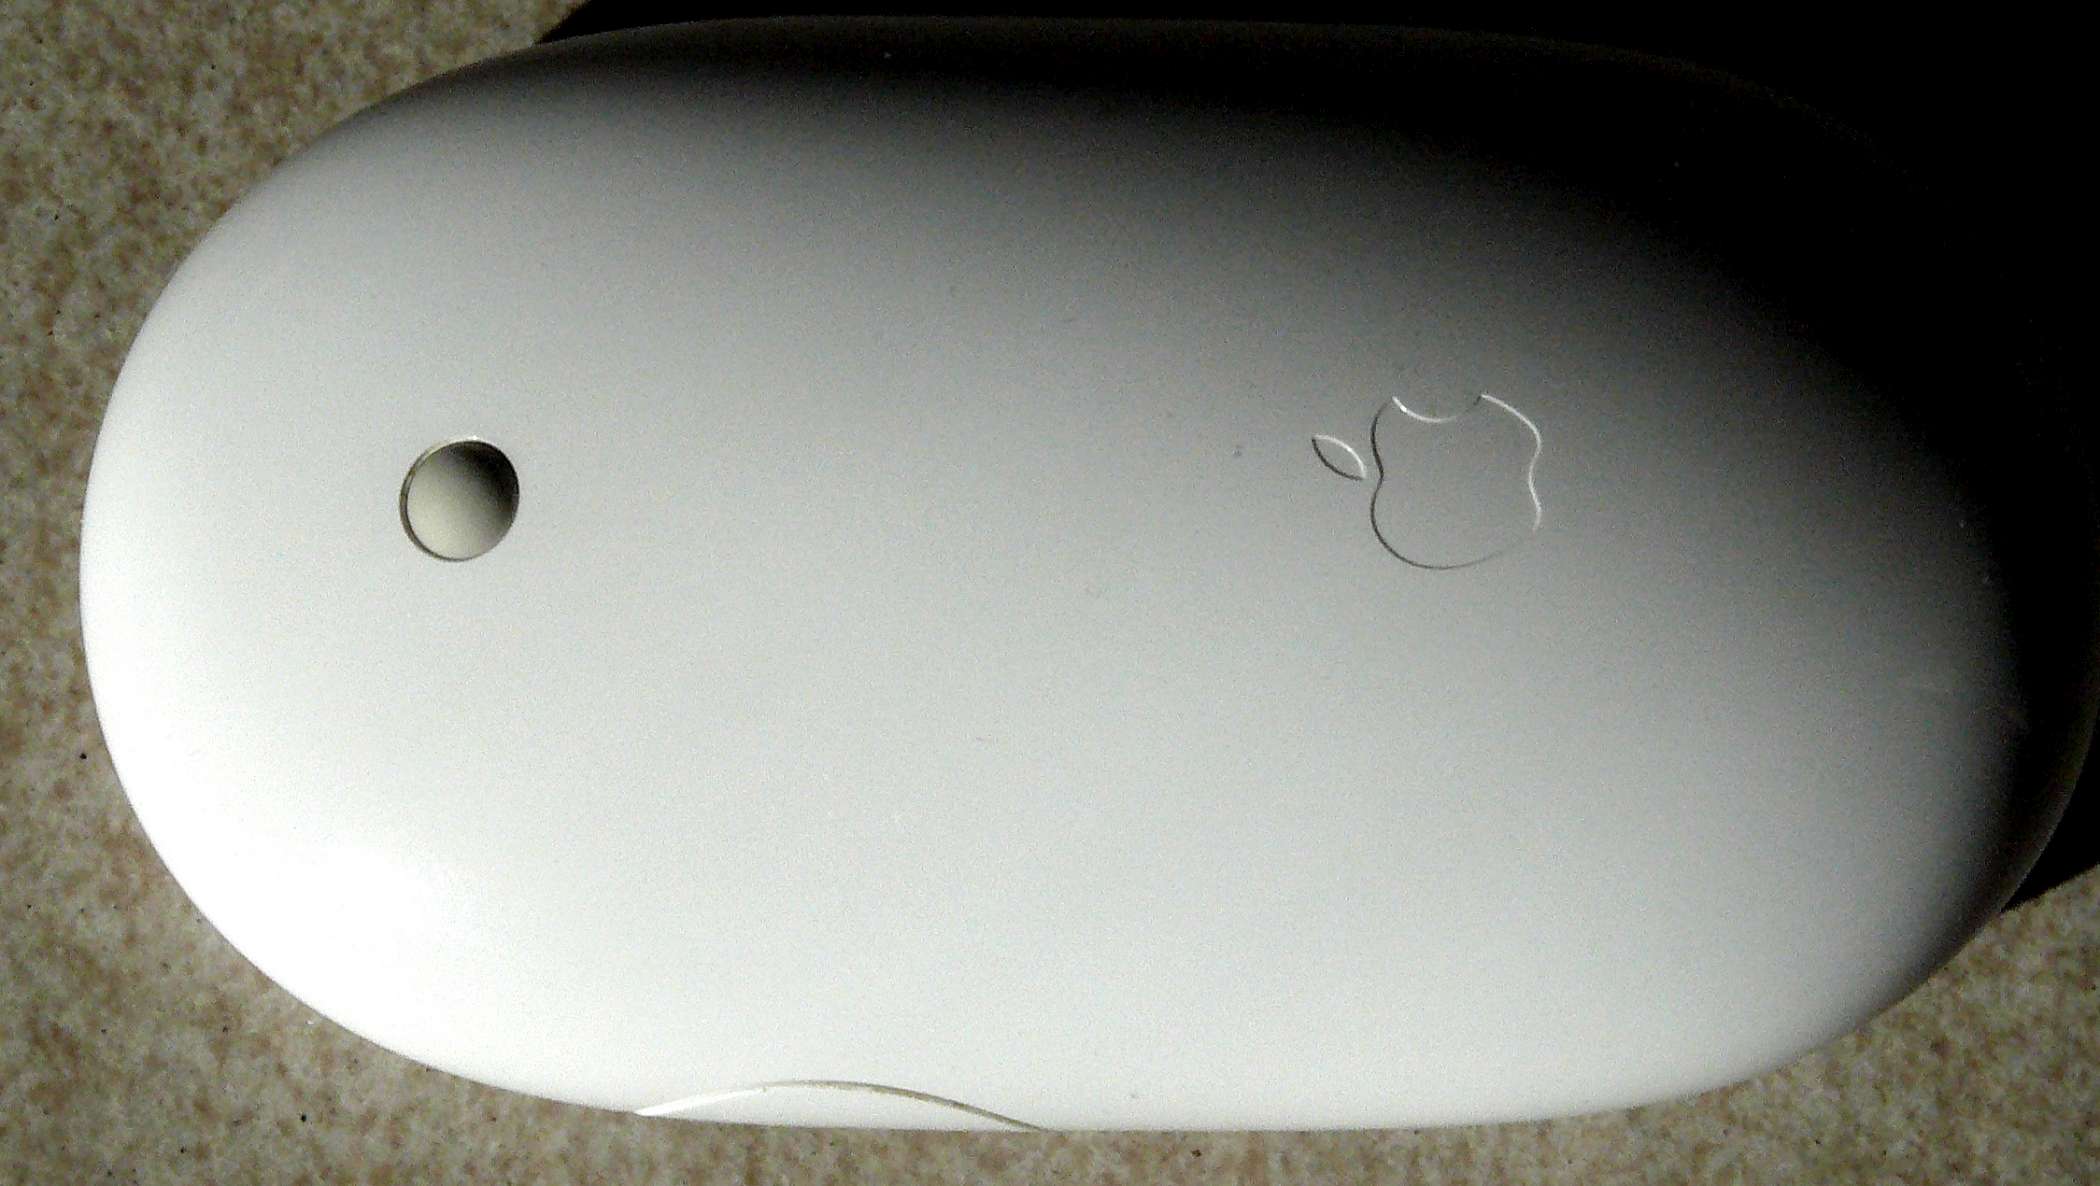 iMac Mouse.jpg